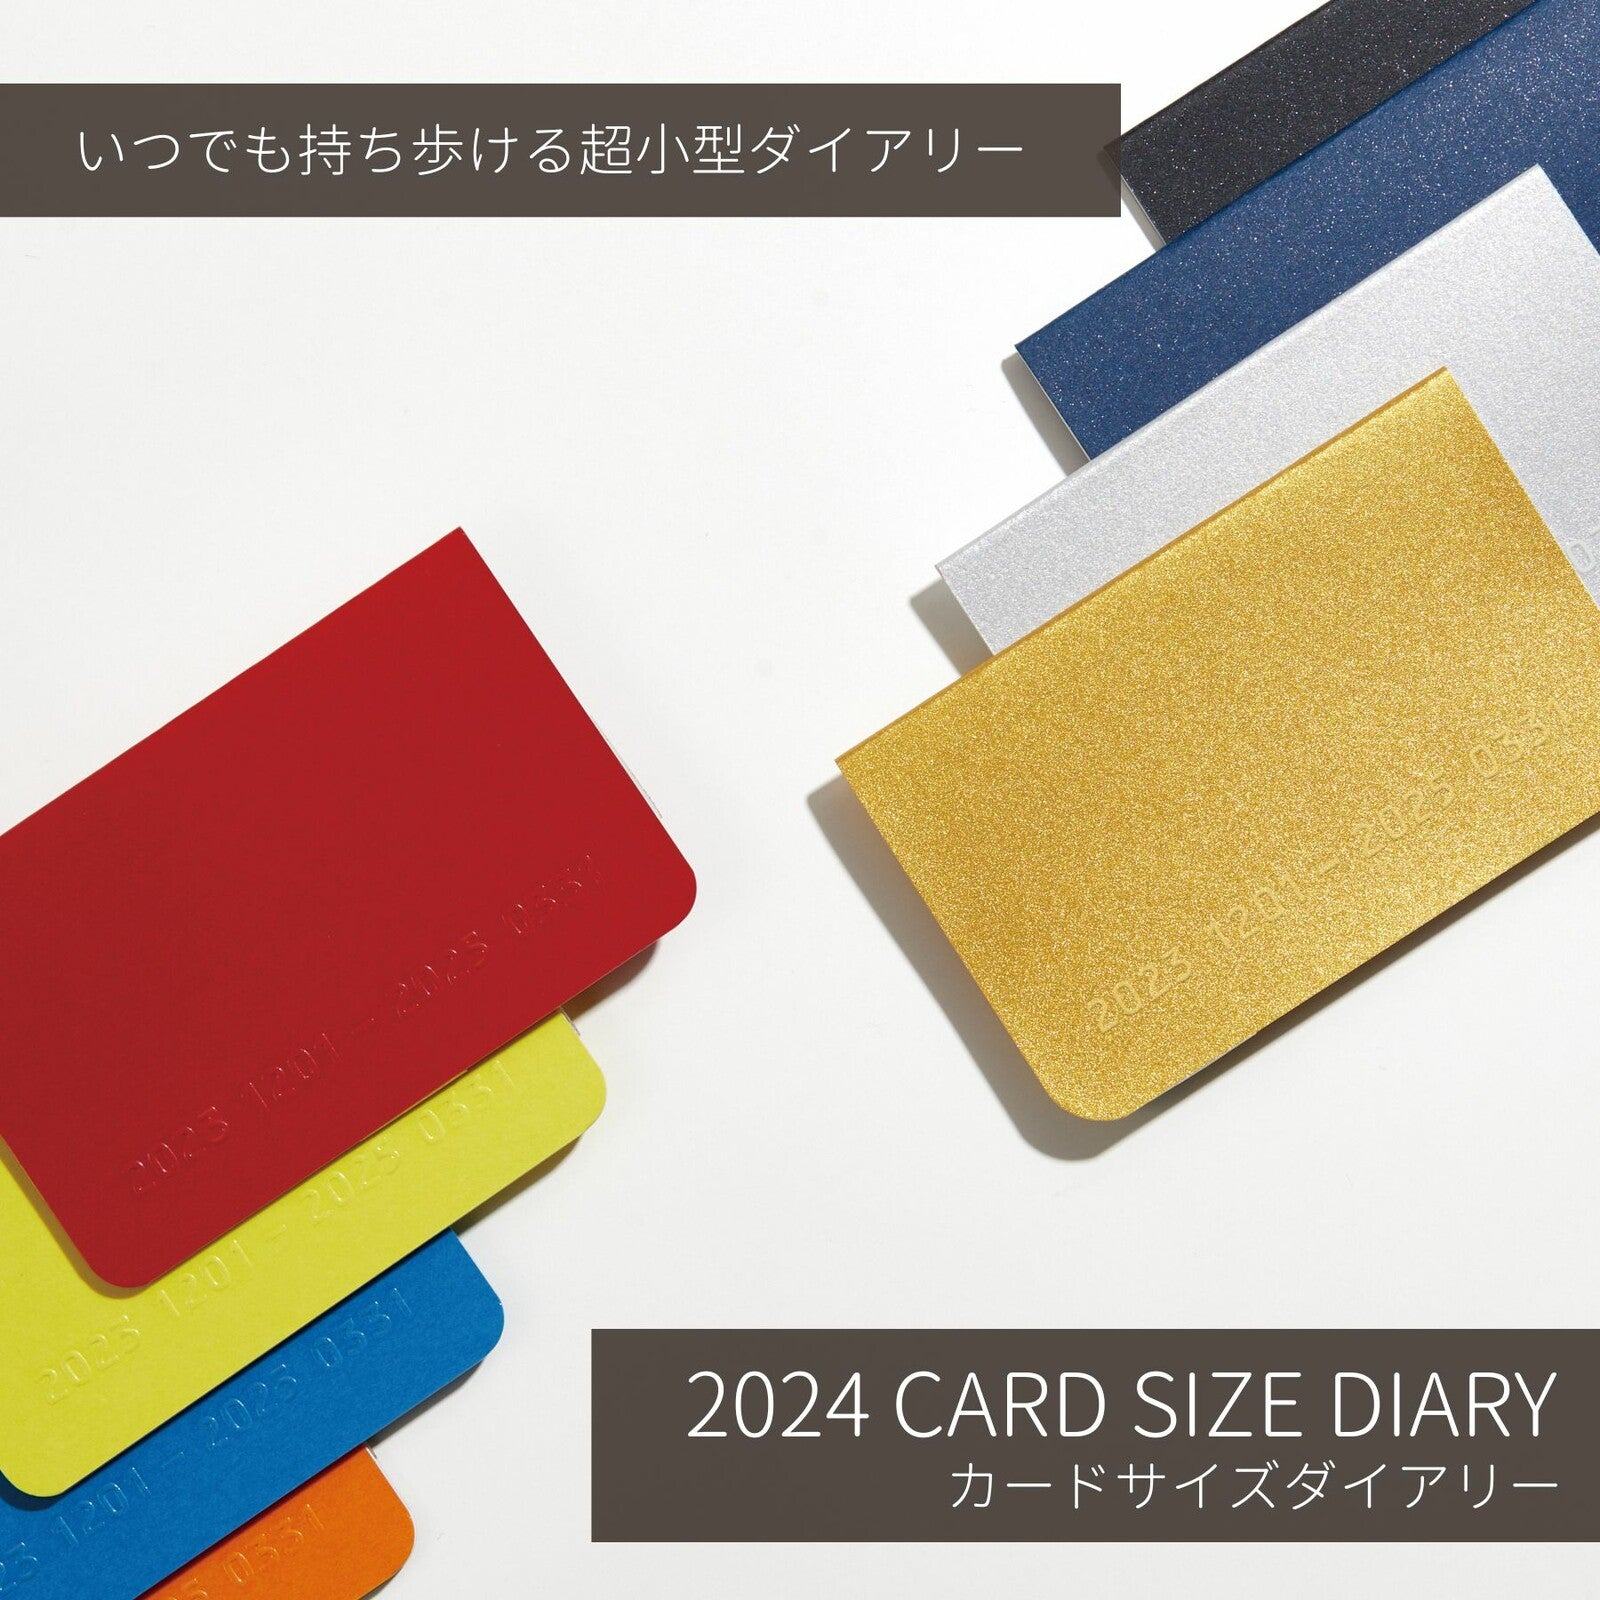 2024 Card Size Diary - Monthly - Navy - Techo Treats